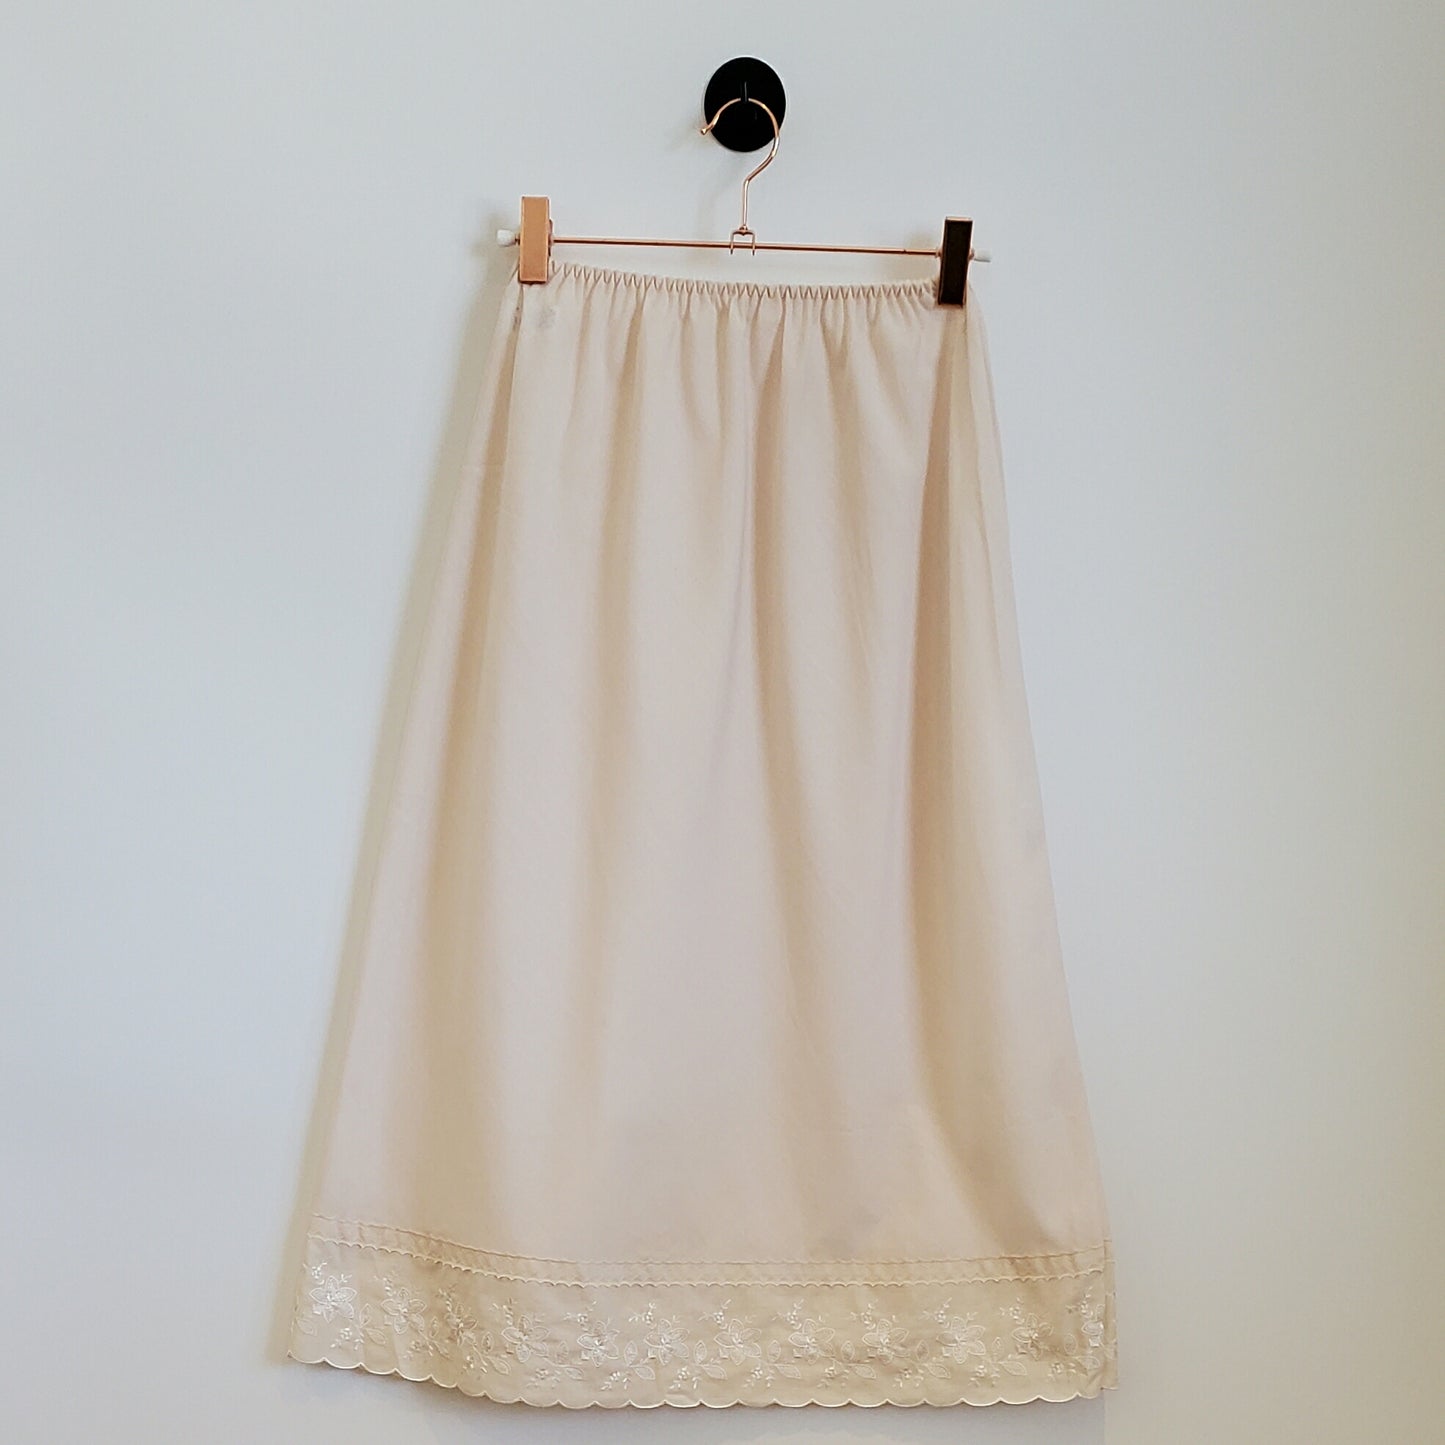 Vintage 70s Lace Trim Slip Skirt | Size 10-12